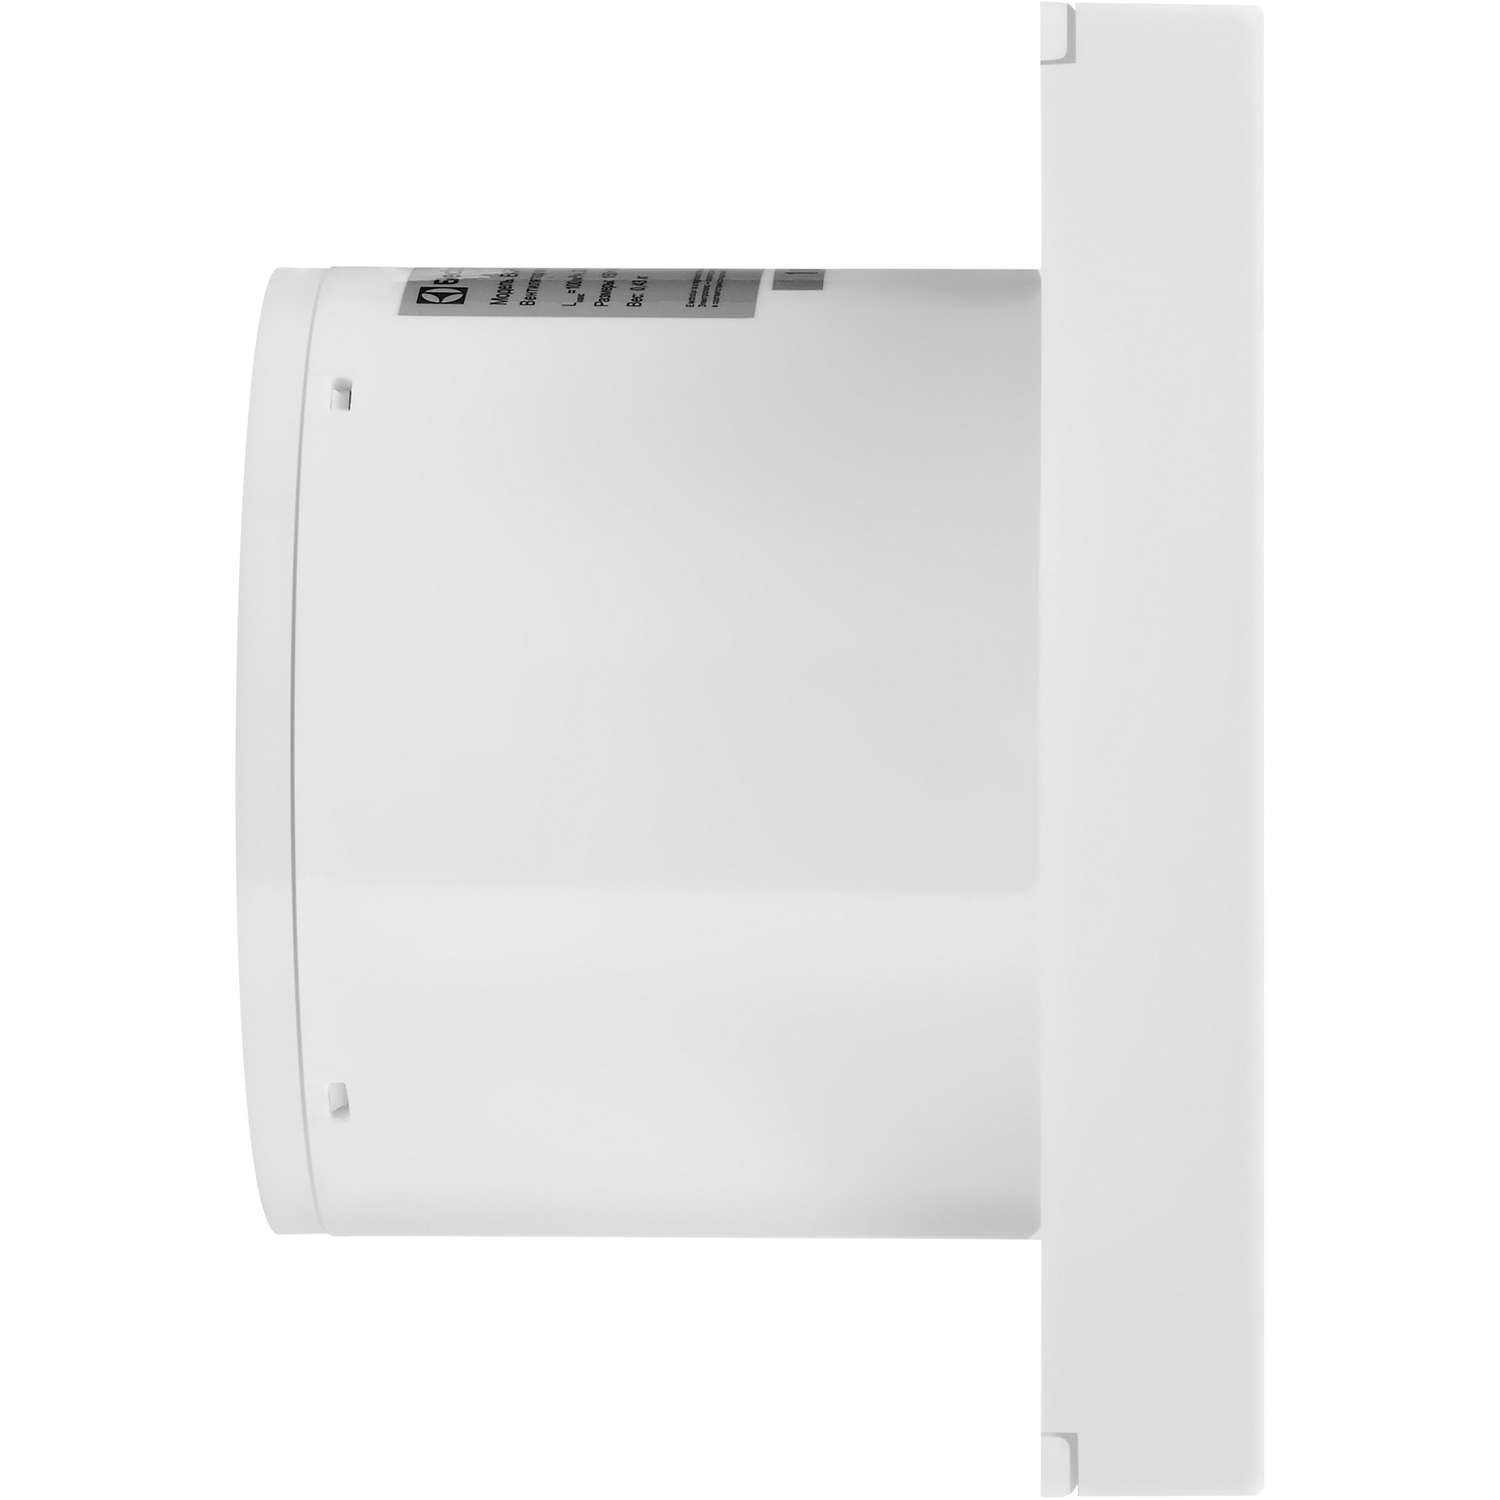 Вентилятор вытяжной Electrolux EAFR-120TH white - фото 3